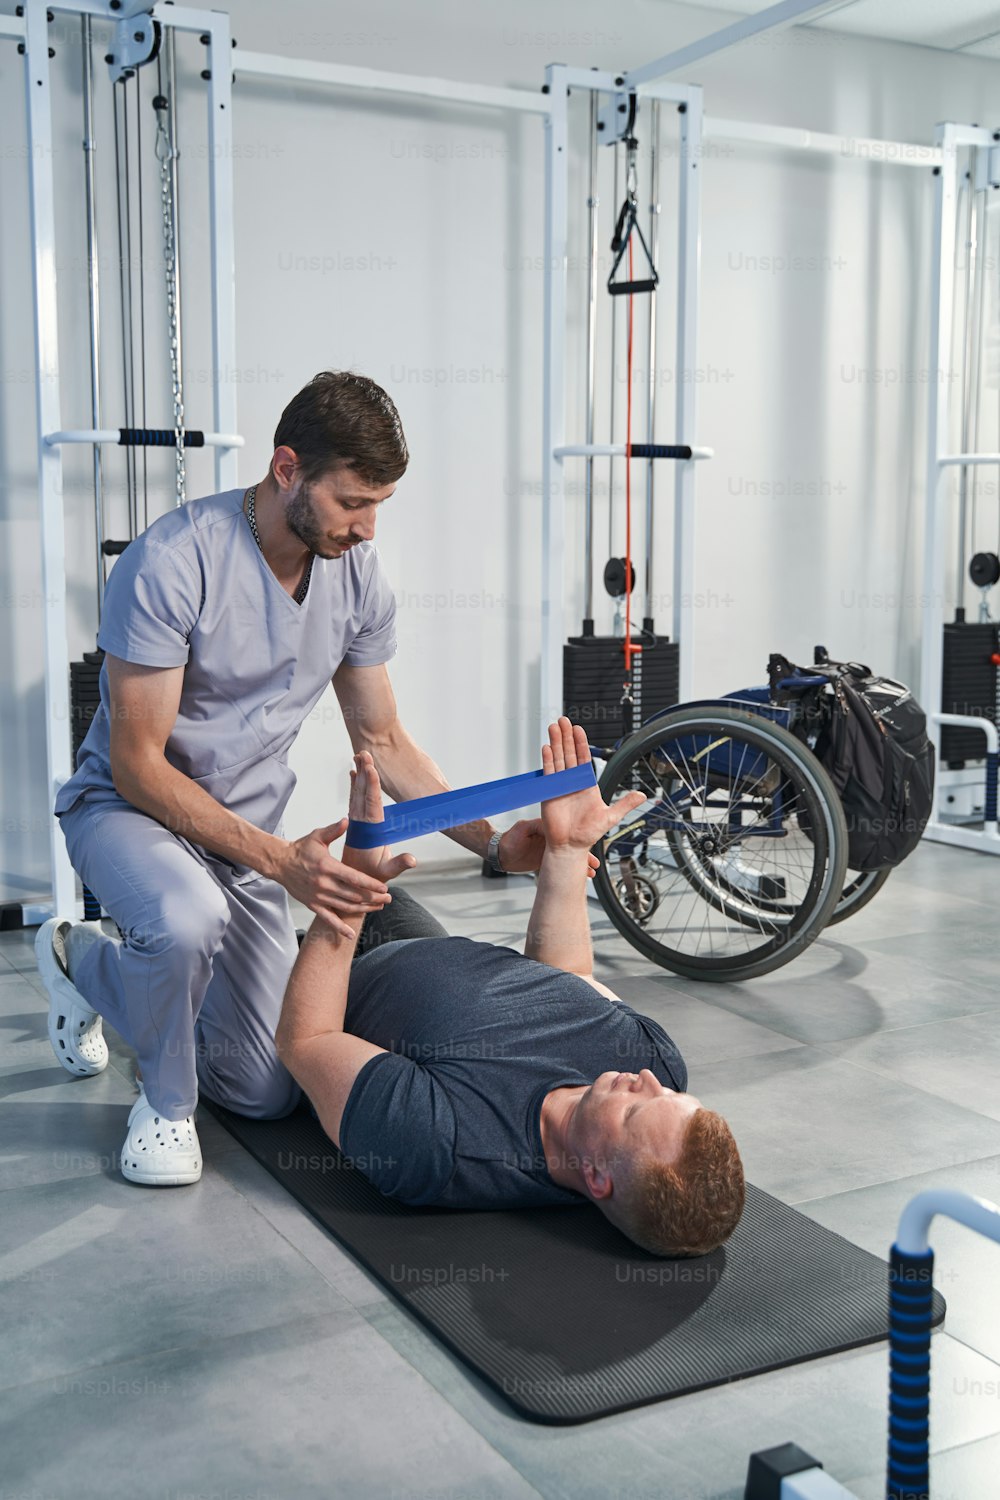 El fisioterapeuta masculino sostiene una banda elástica mientras el hombre está acostado en una alfombra para hacer ejercicio de rehabilitación de fuerza